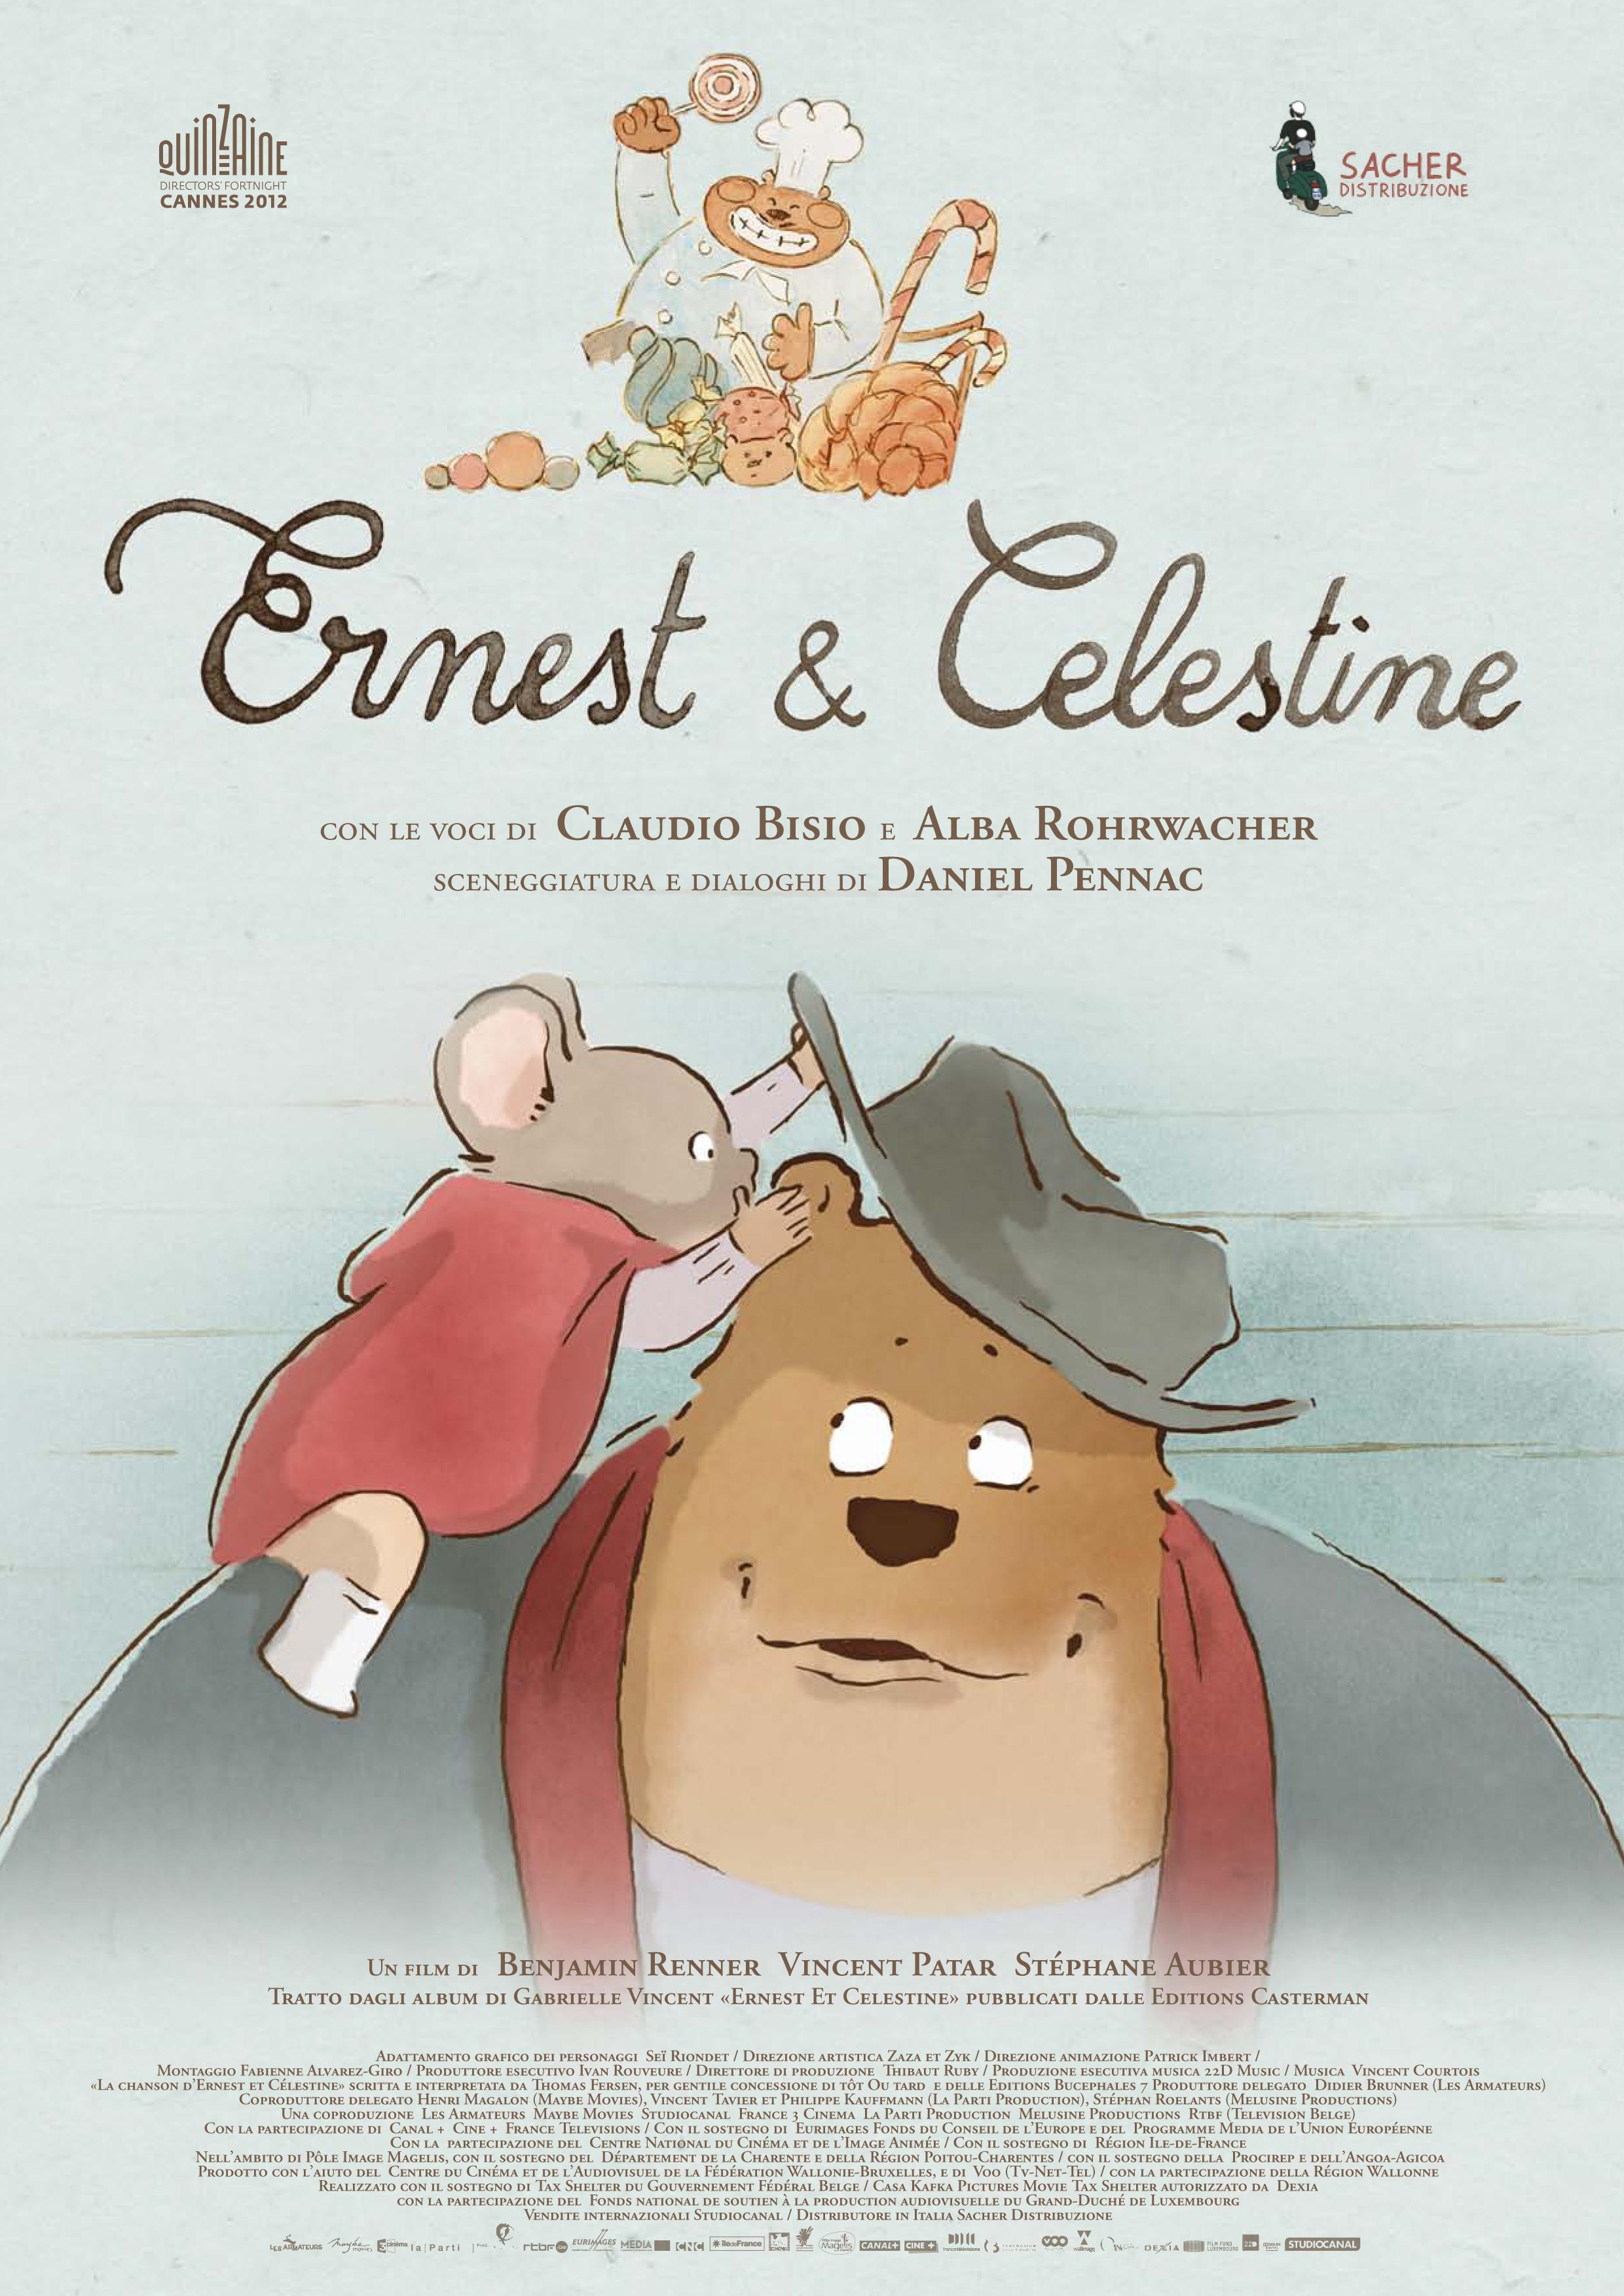 Постер фильма Эрнест и Селестина: Приключения мышки и медведя | Ernest et Celestine